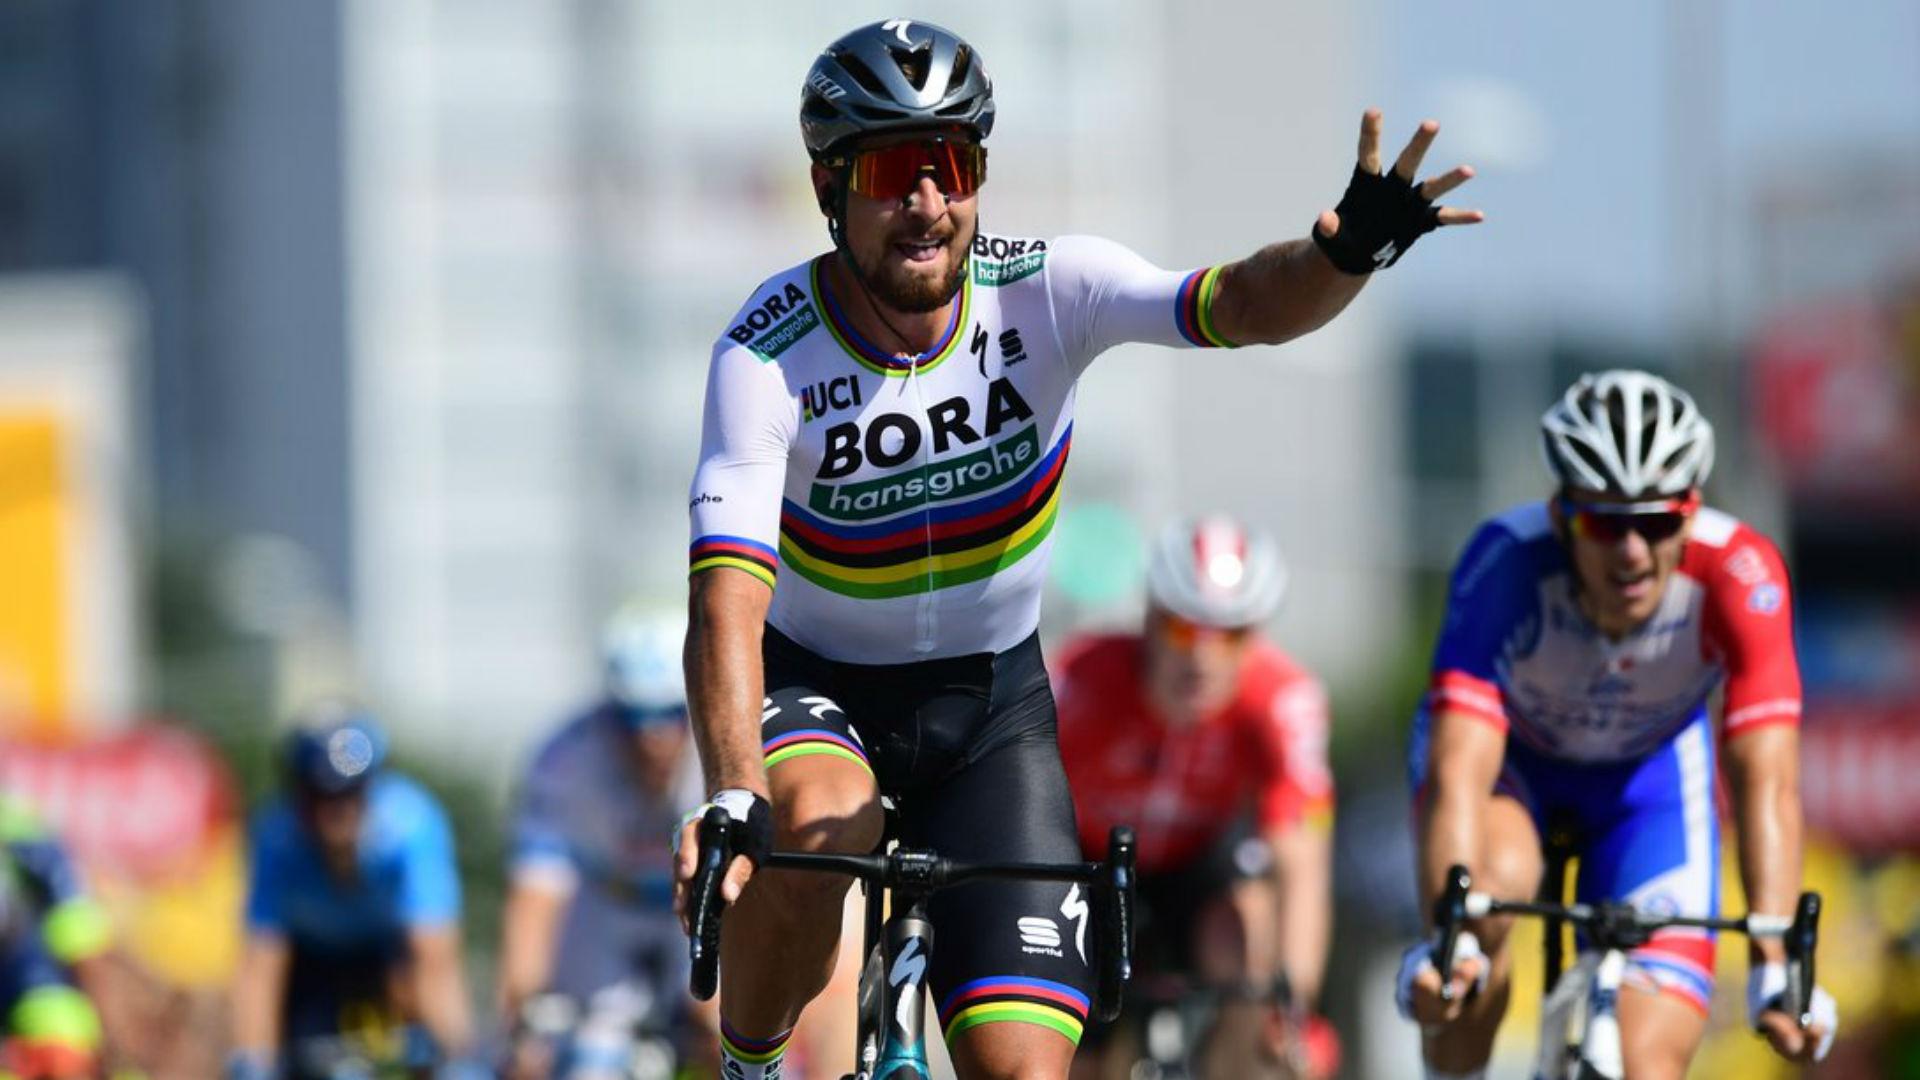 Tour de France 2018: Chris Froome plays it safe as Peter